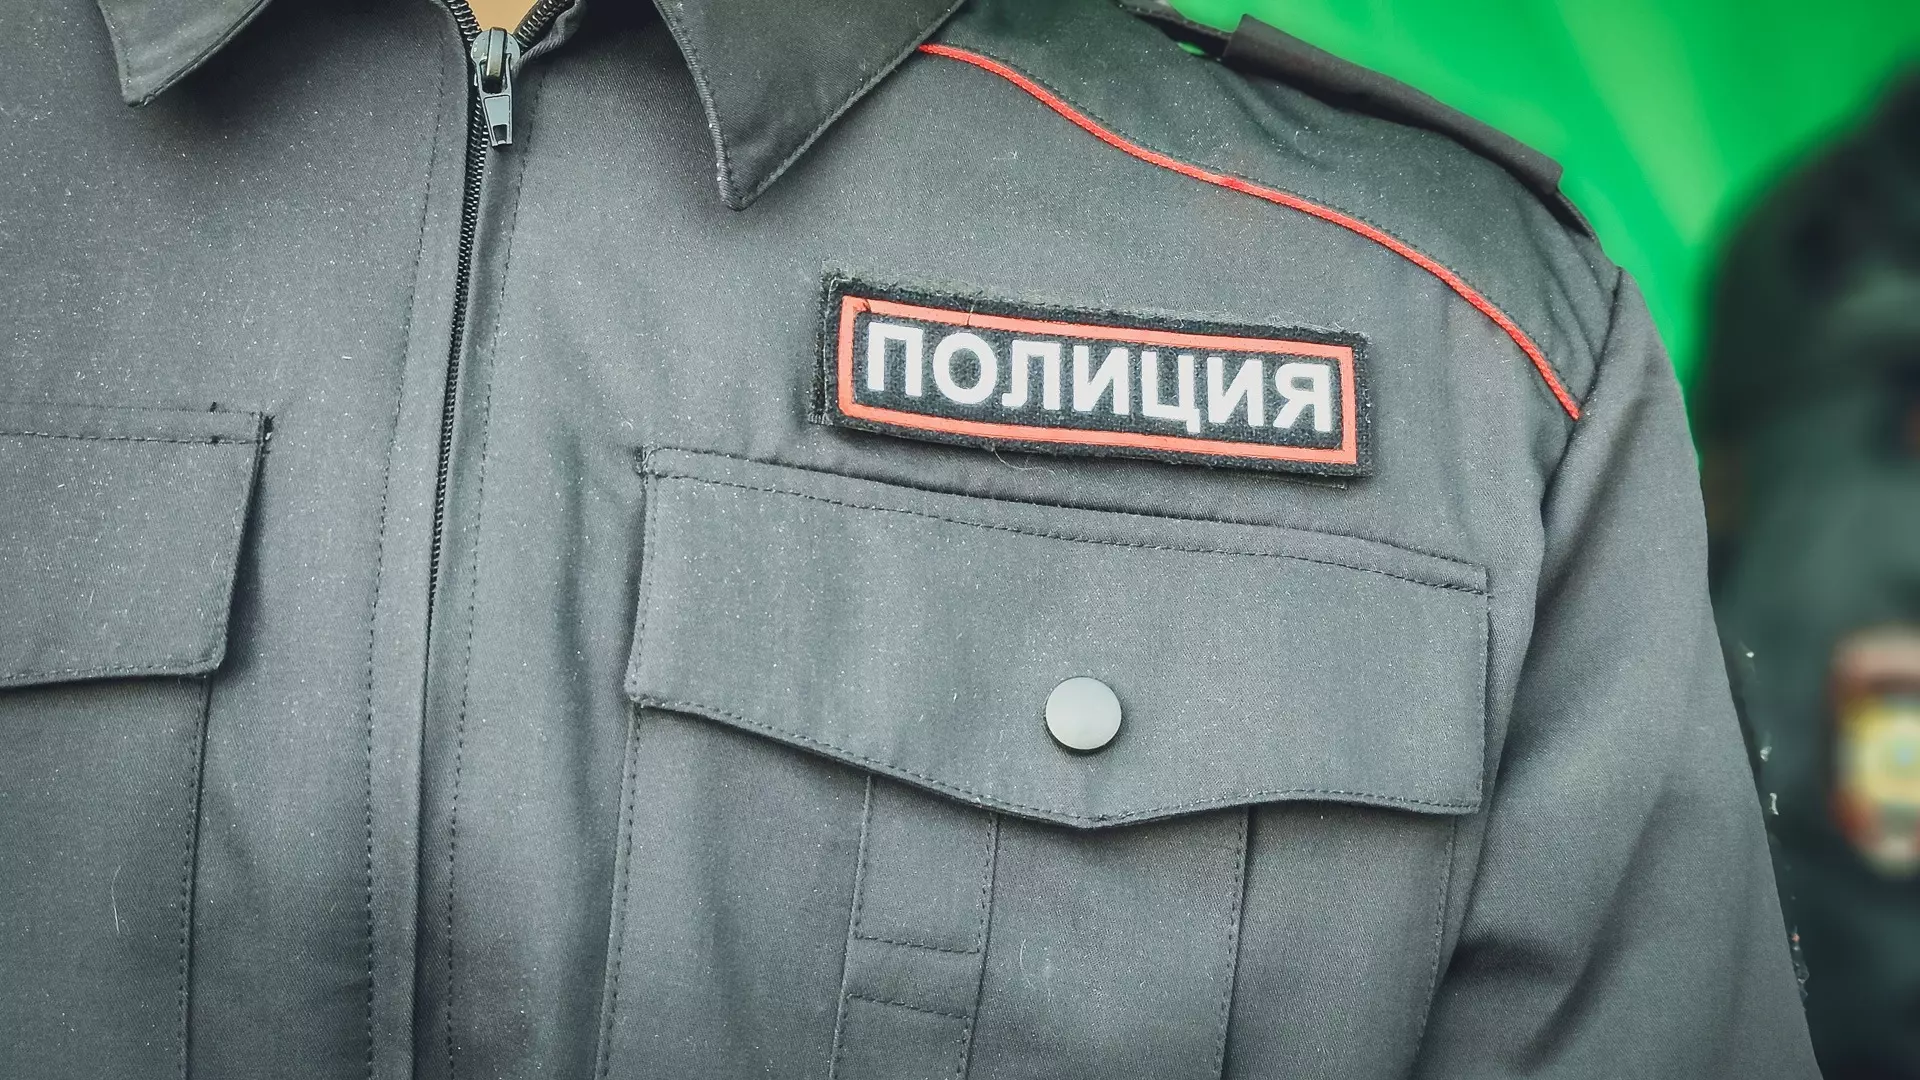 В Челябинске арестованный мужчина выпрыгнул в окно на суде по видеосвязи